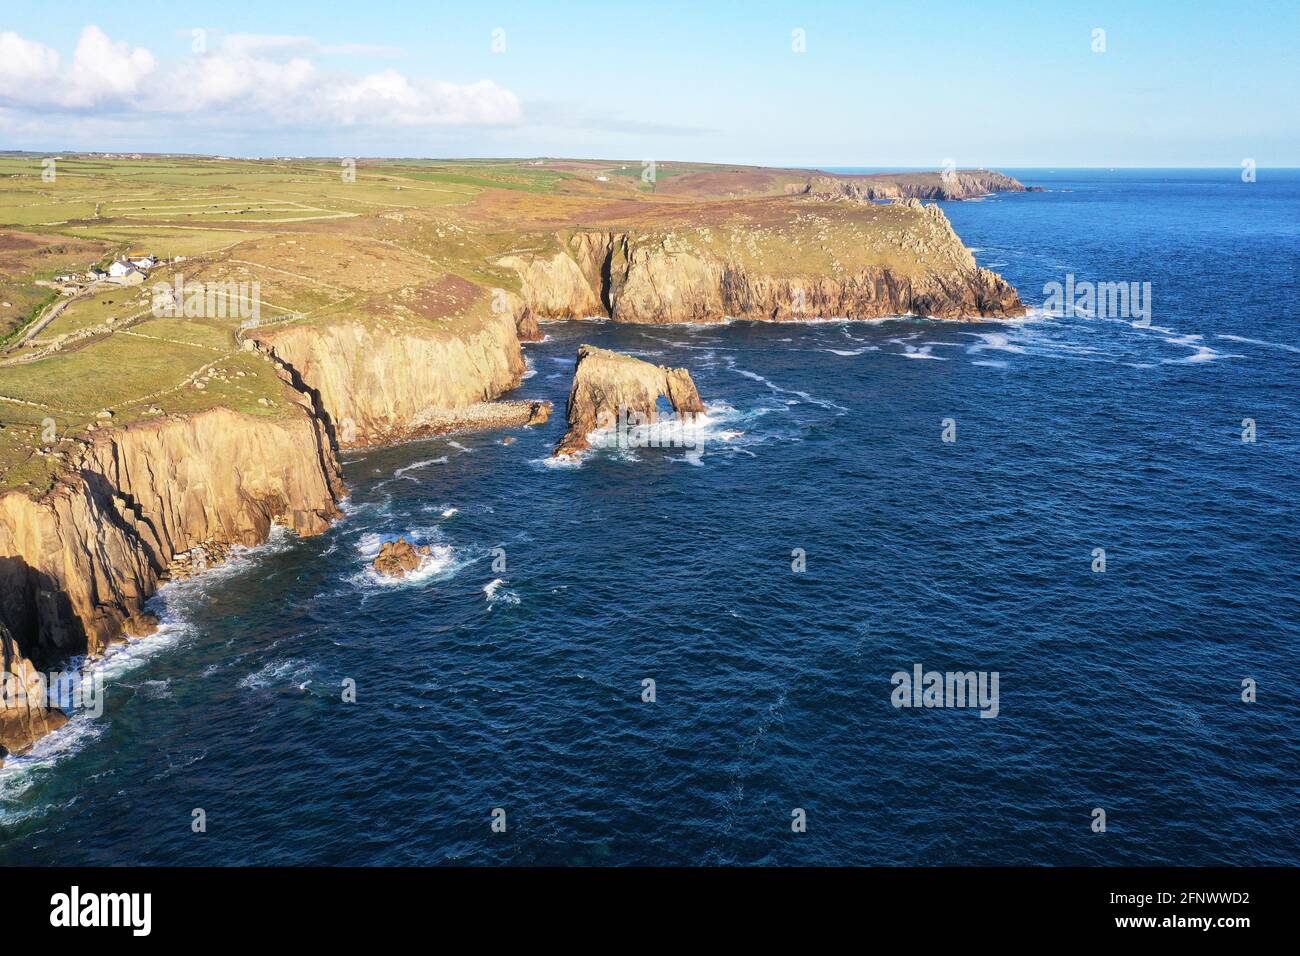 Magnifique côte sauvage prise à la fin des terres de Cornwall, en Angleterre Banque D'Images